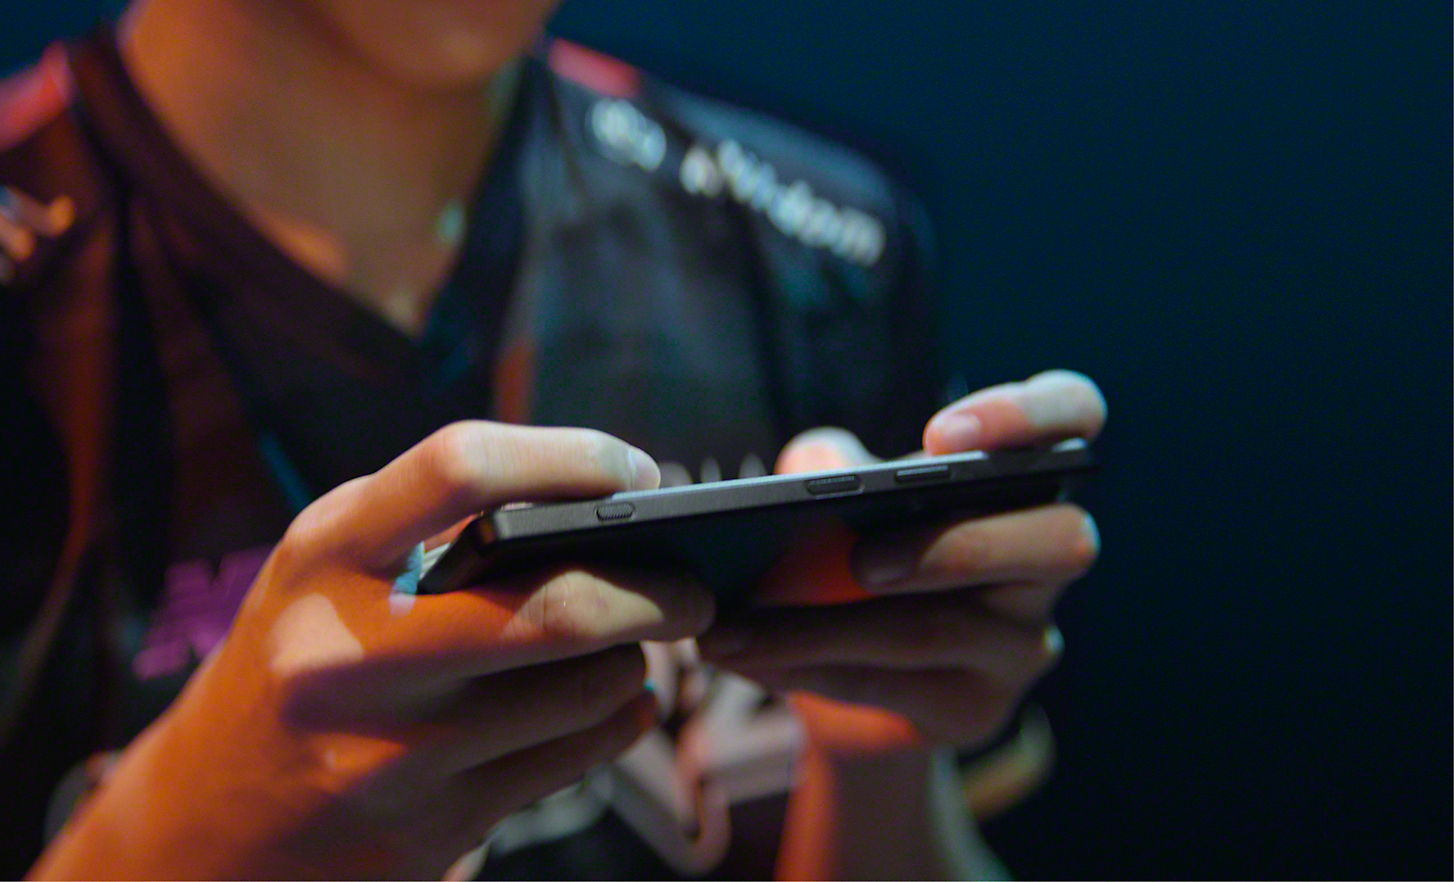 Zbliżenie na ręce osoby grającej w gry mobilne na smartfonie Xperia 1 IV